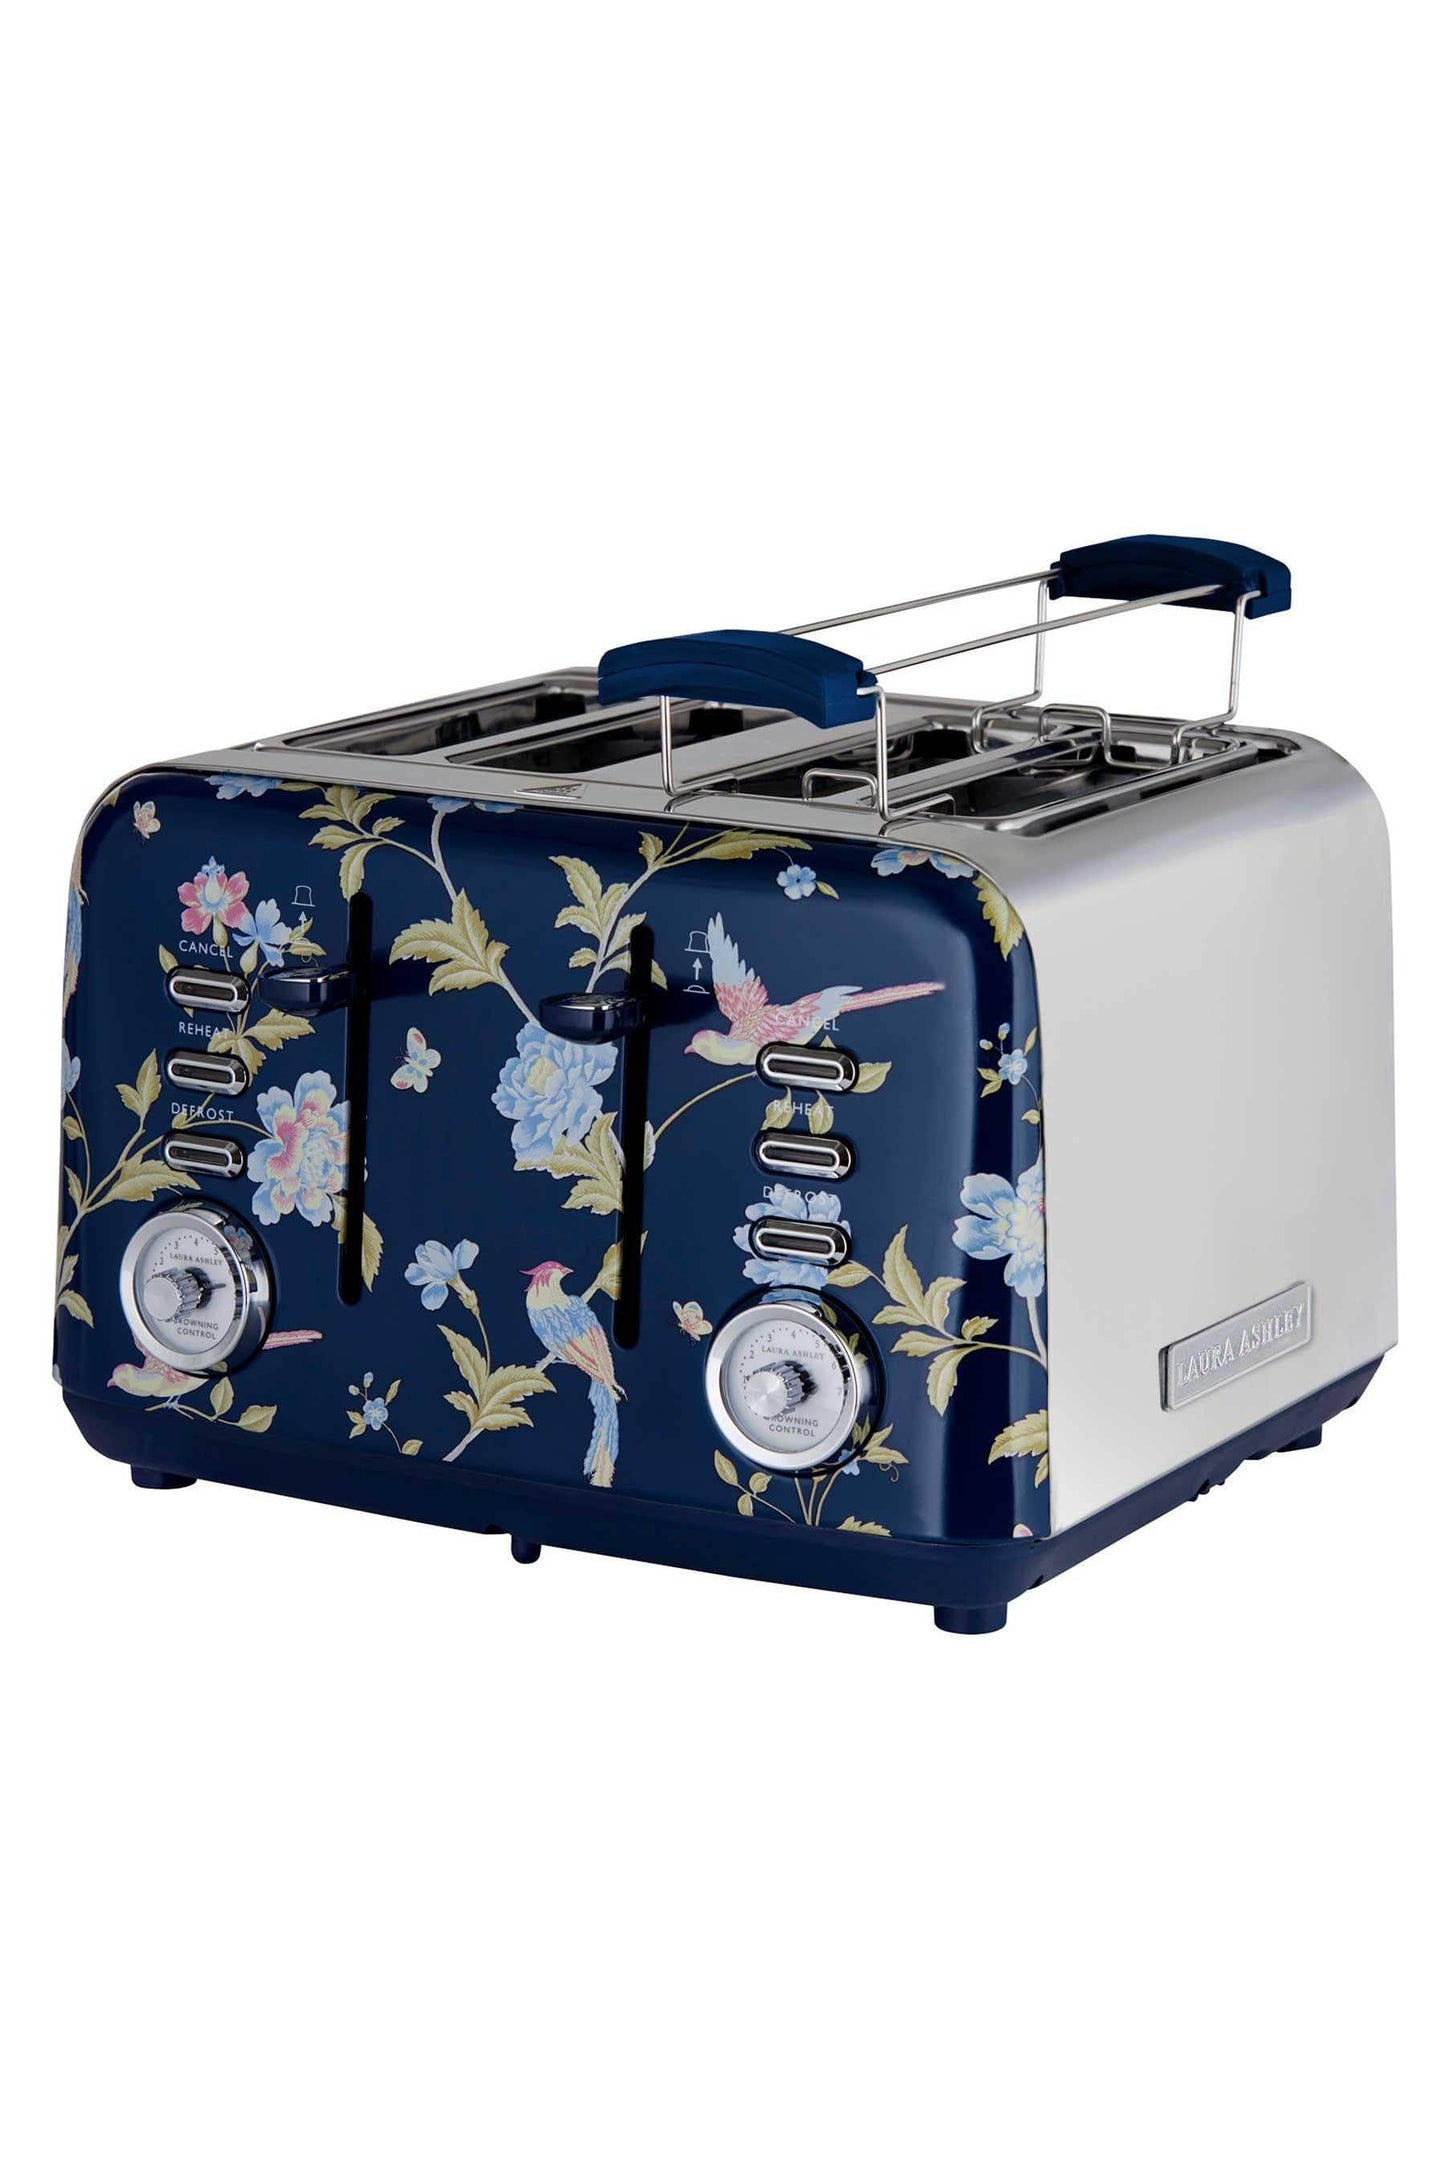 Kitchenware  -  Laura Ashley Elveden 4 Slice Toaster - Blue  -  60007980